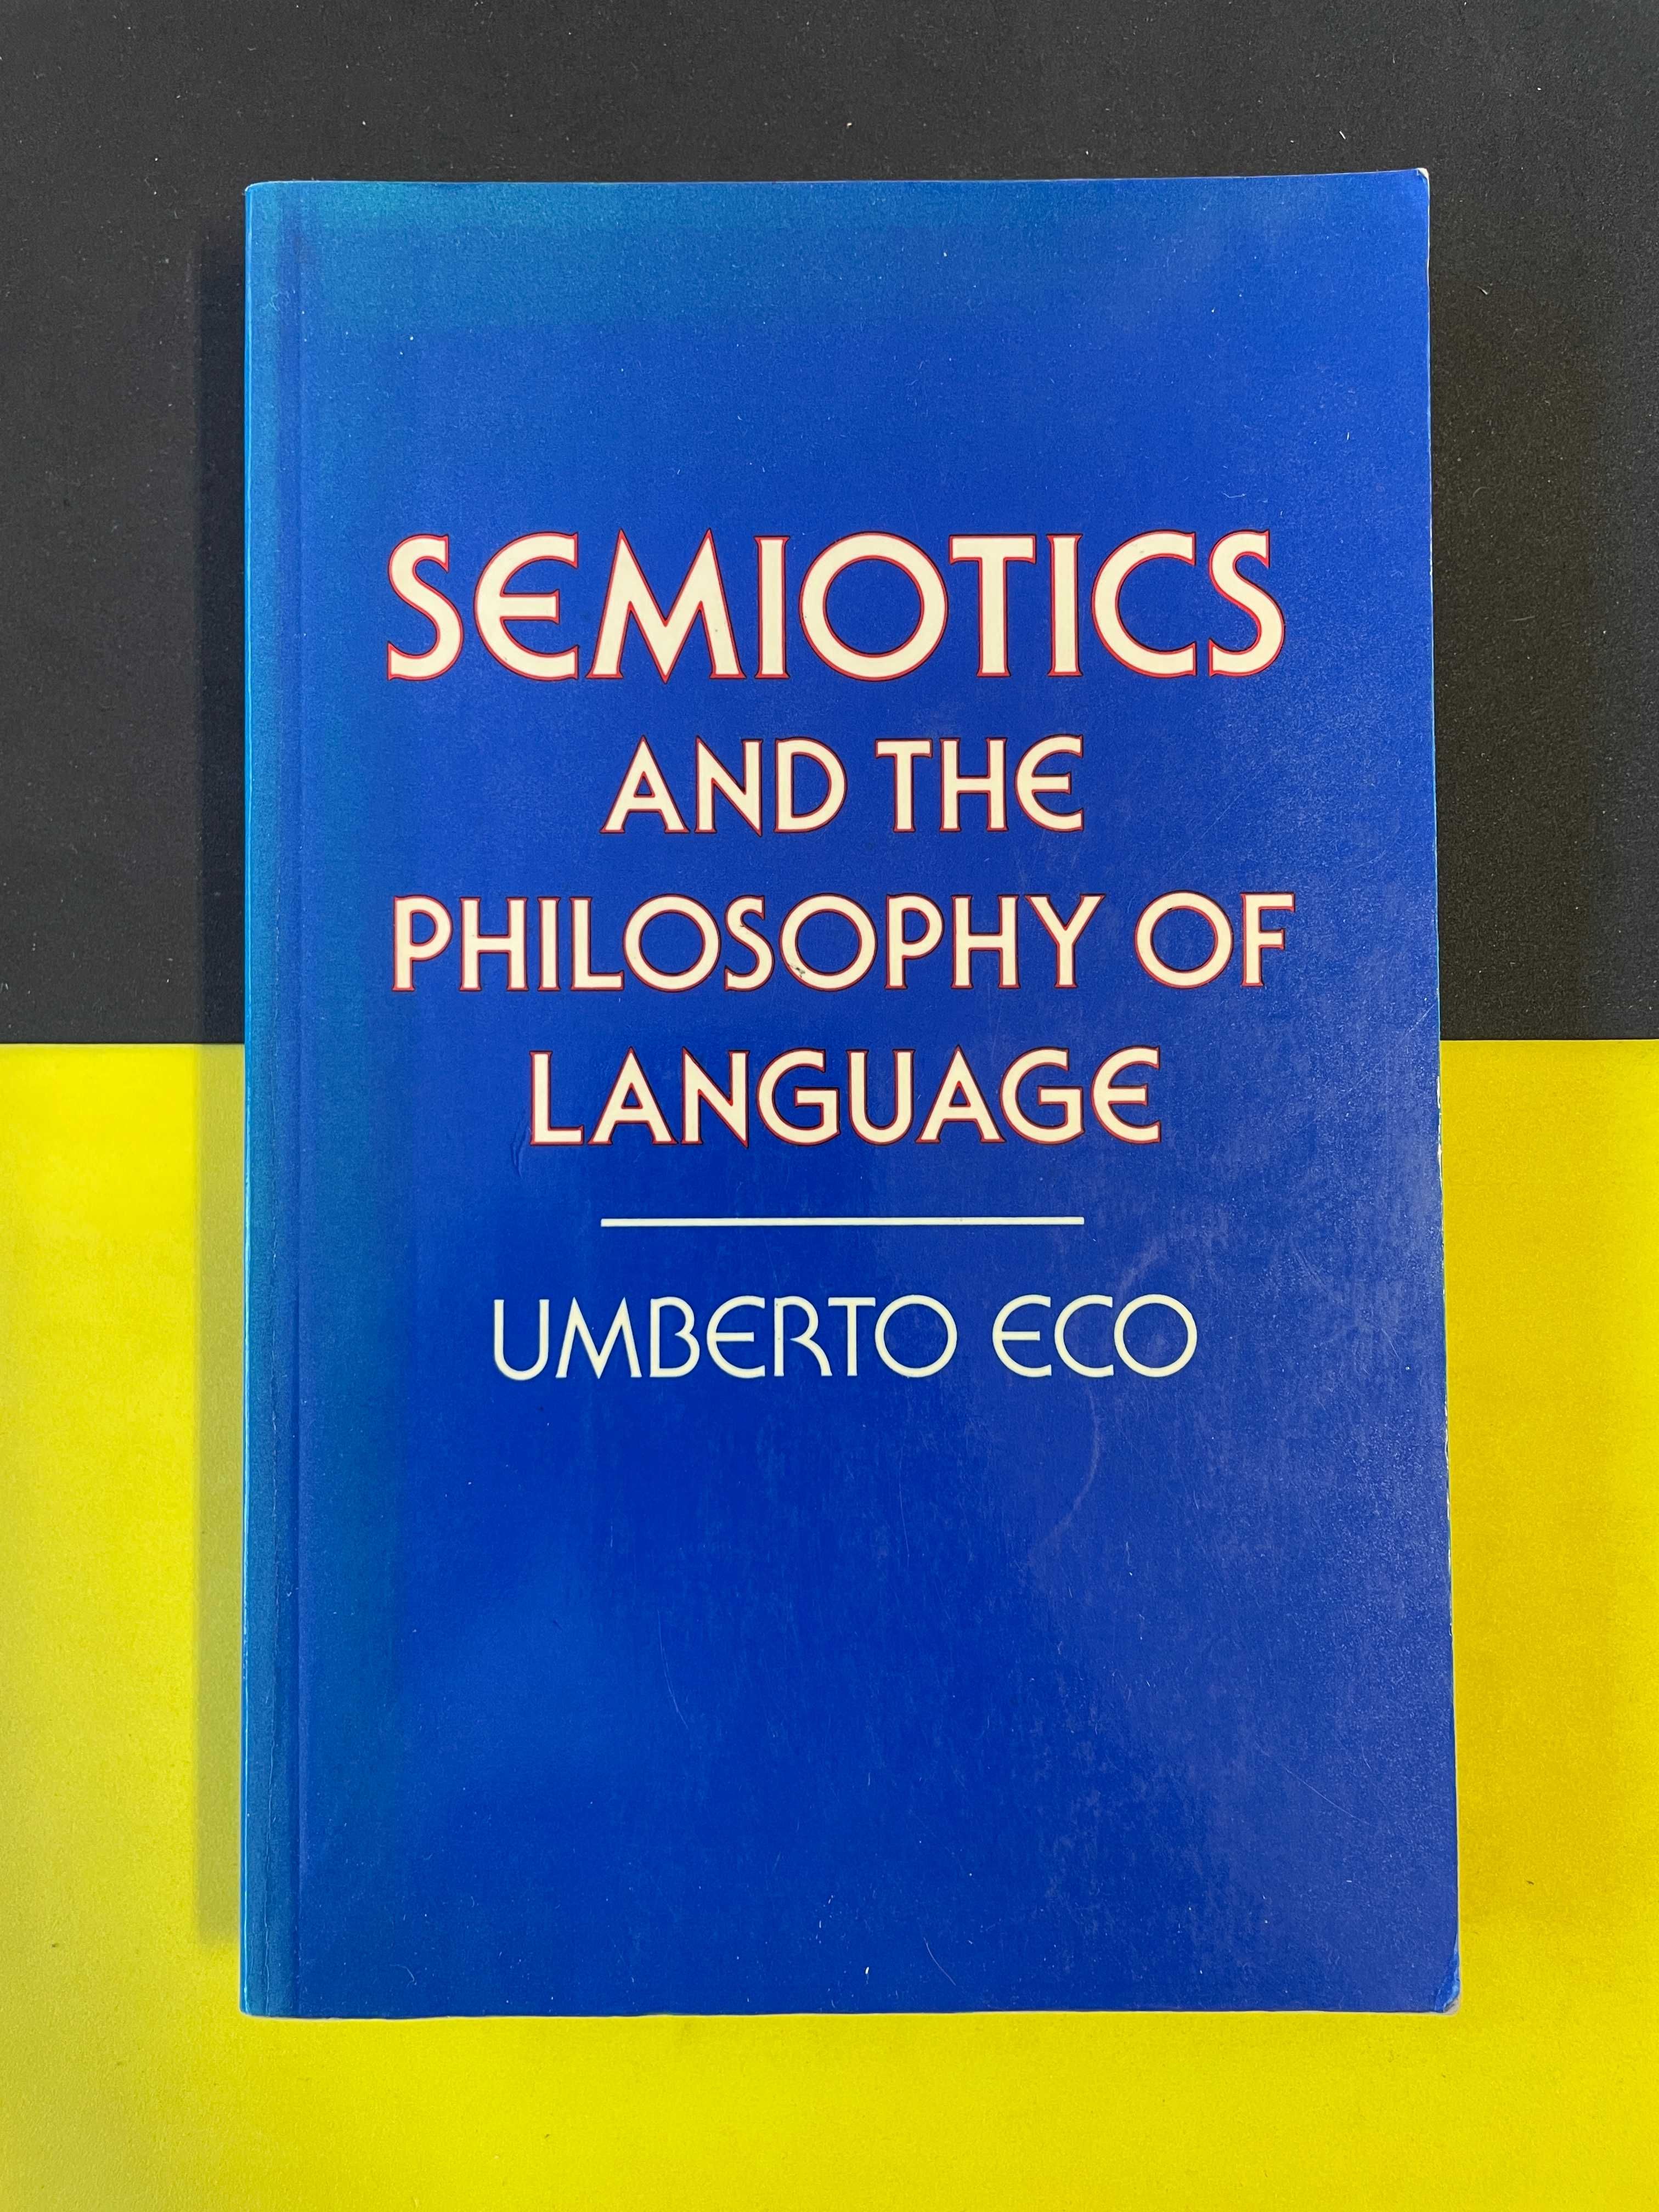 Umberto Eco - Semiotics and the Philosophy of language